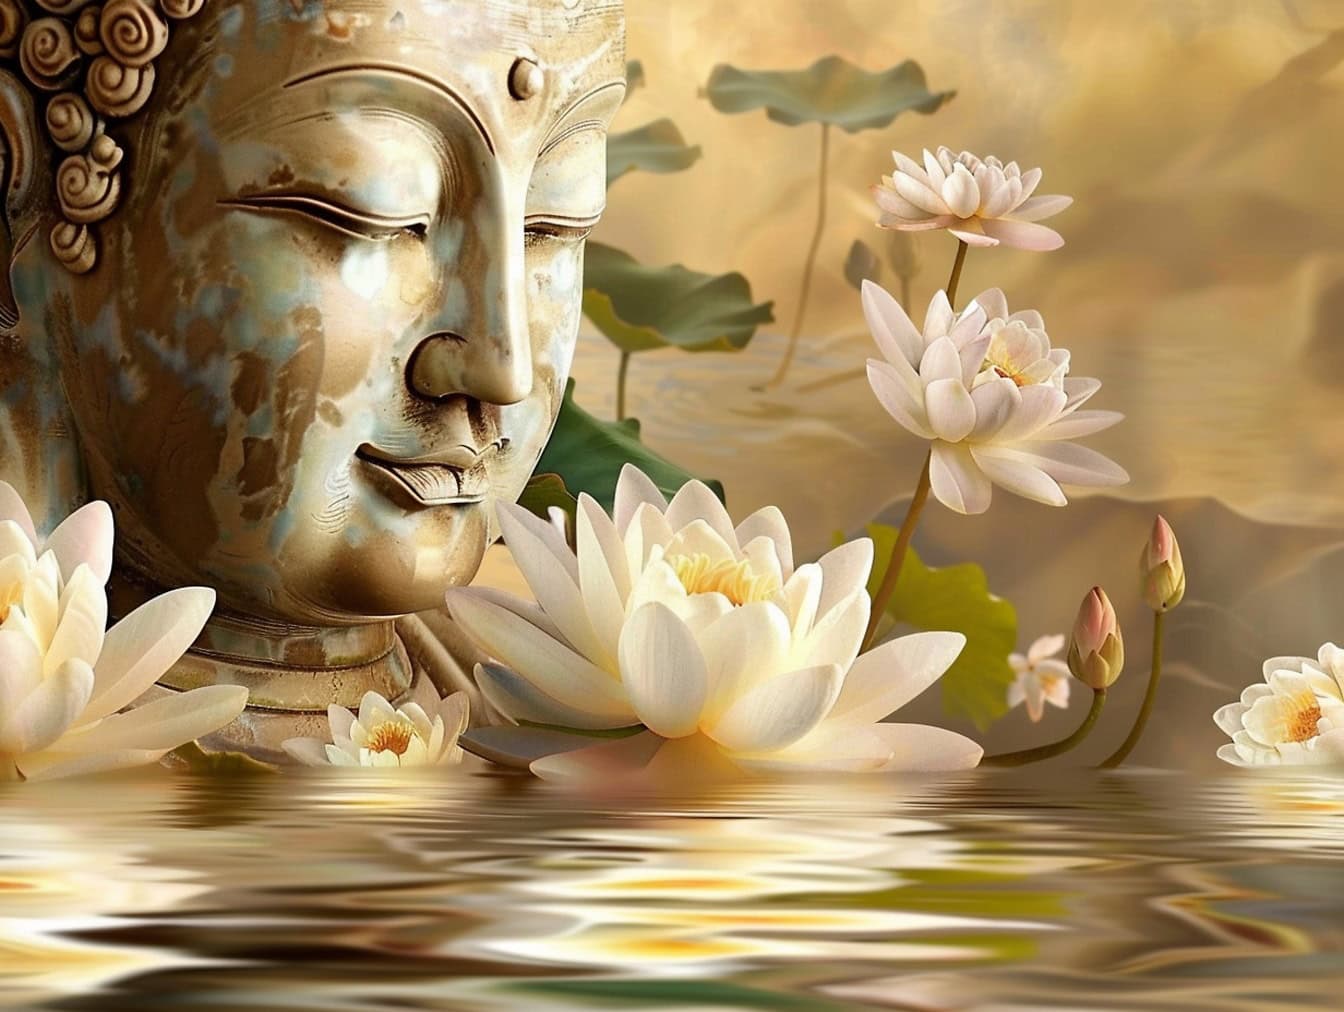 Estatua de una cabeza de Buda con los ojos cerrados rodeada de flores de loto blancas